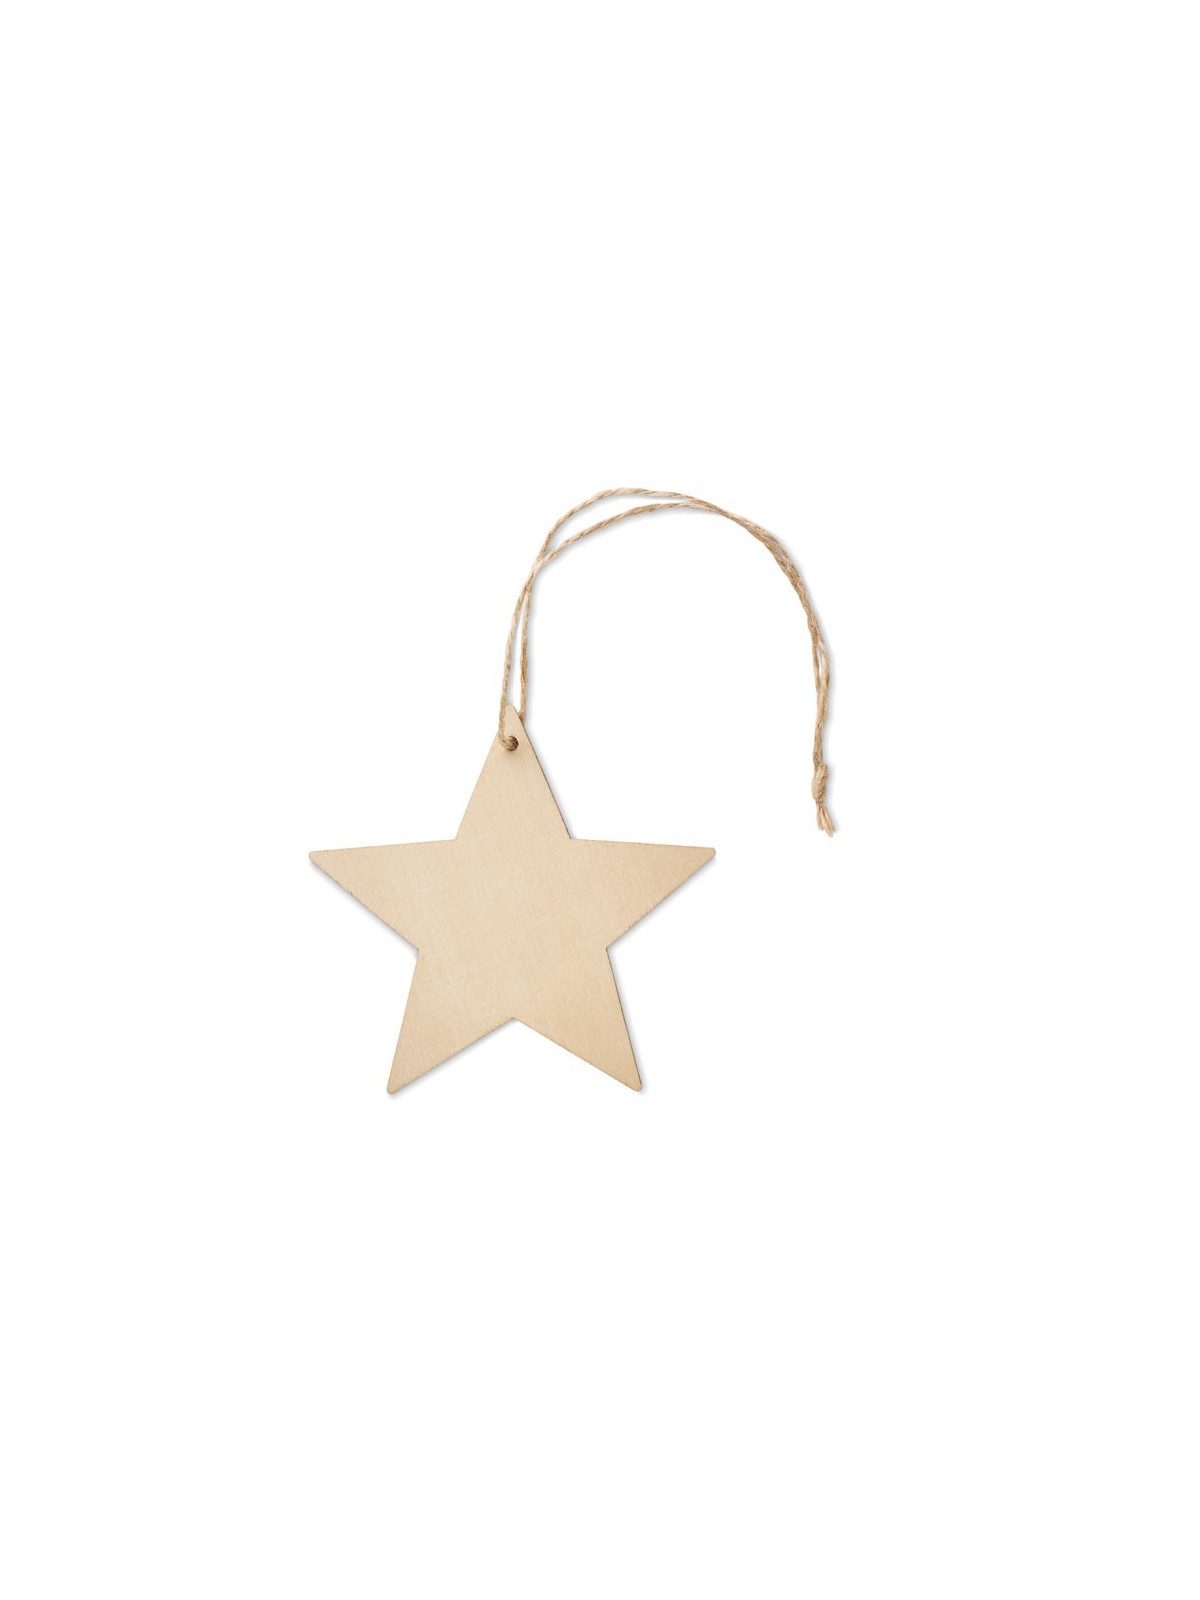 42-415 Décoration étoile de Noël en bois  personnalisé